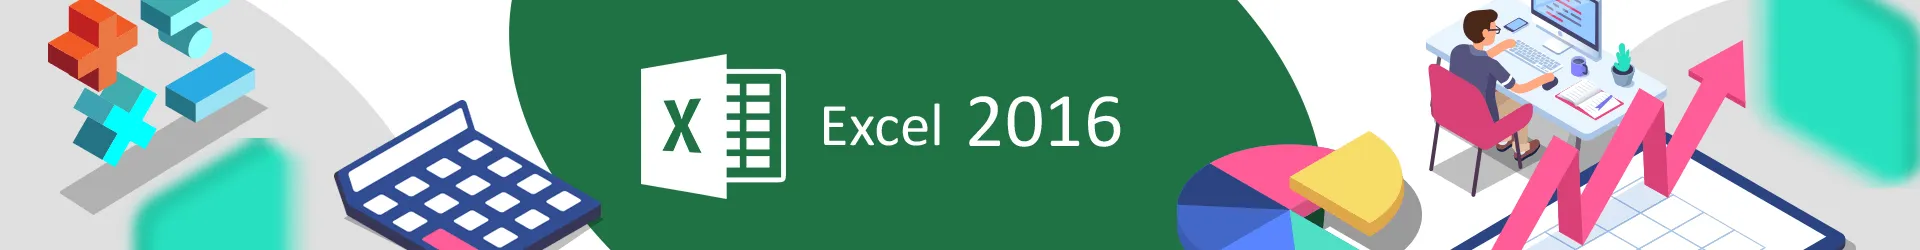 Formation Excel 2016 : maîtriser les fondamentaux 
Cours et simulations Elearning avec tutorat